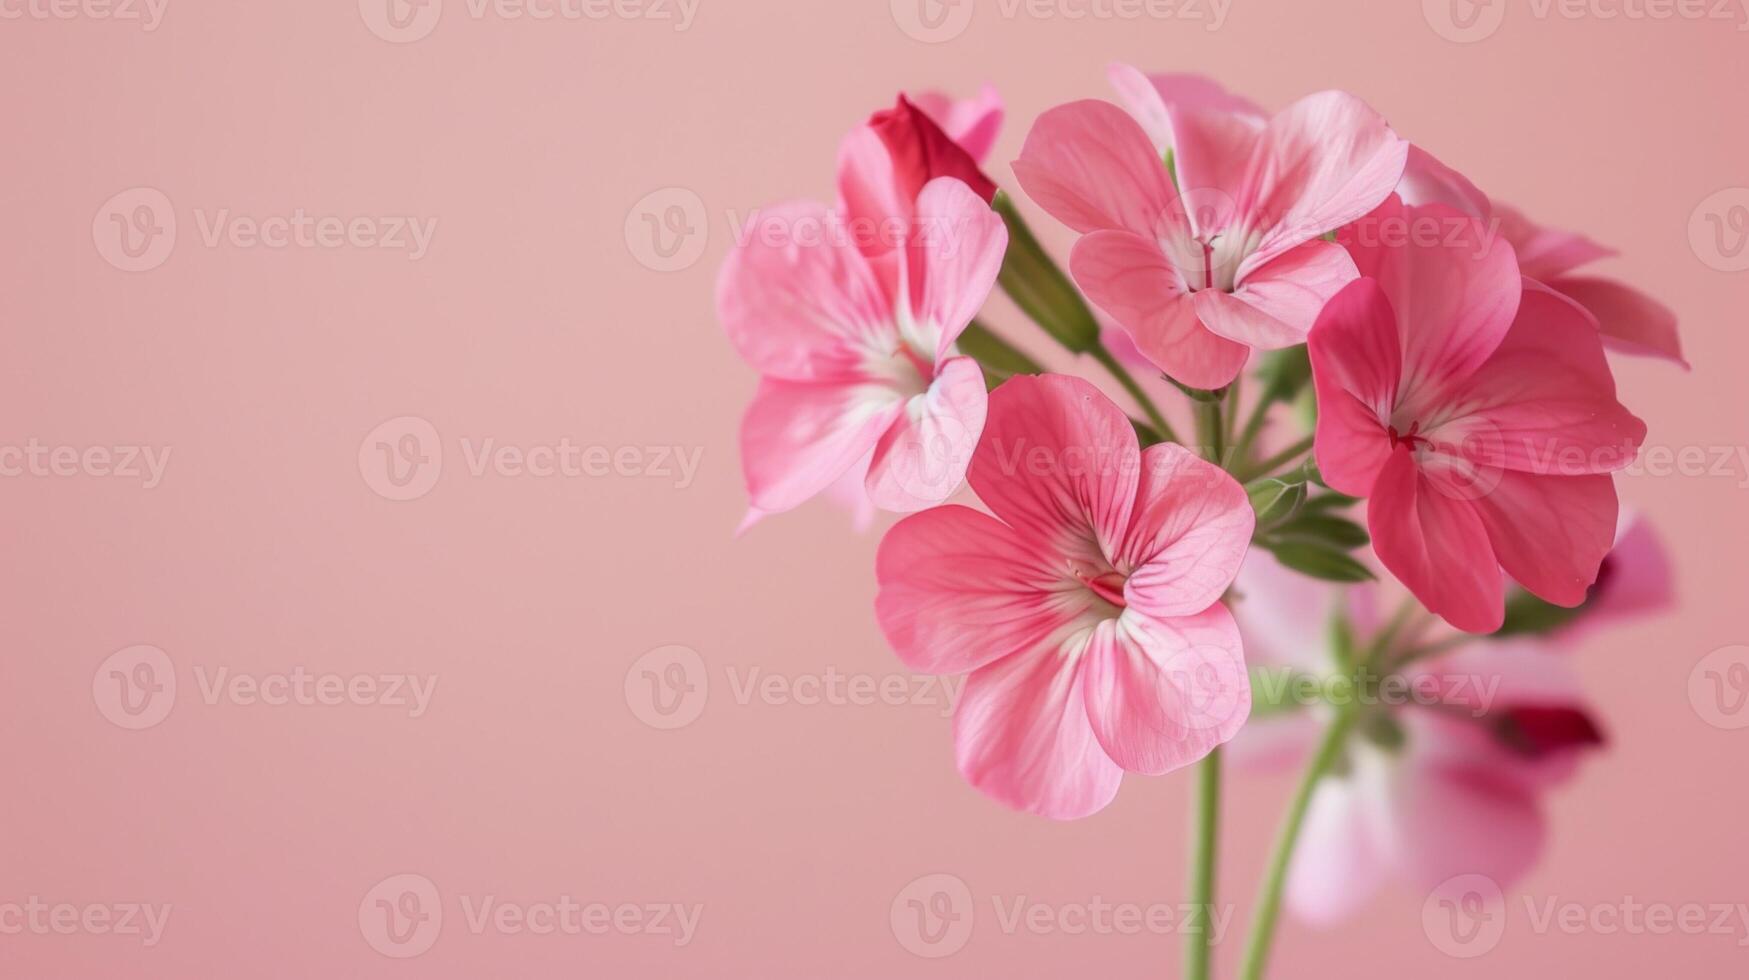 närbild av vibrerande rosa geranium blommor med blomstrande kronblad och mjuk flora bakgrund foto